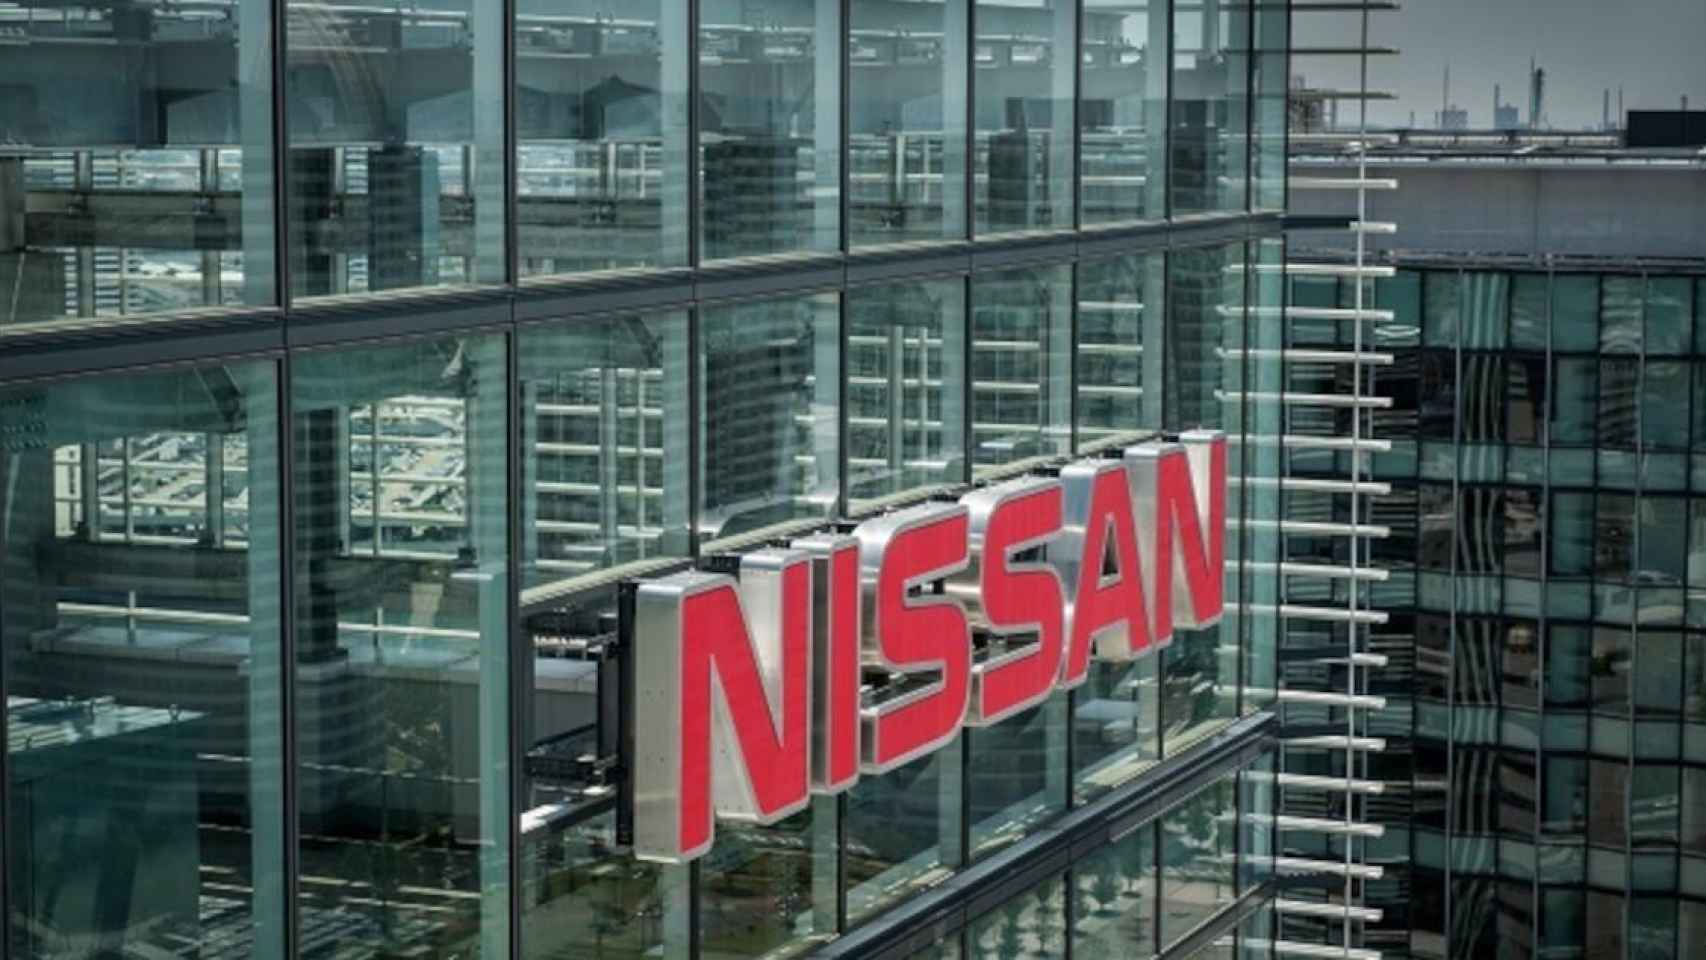 La sede central de Nissan en Yokohama, Japón / NISSAN